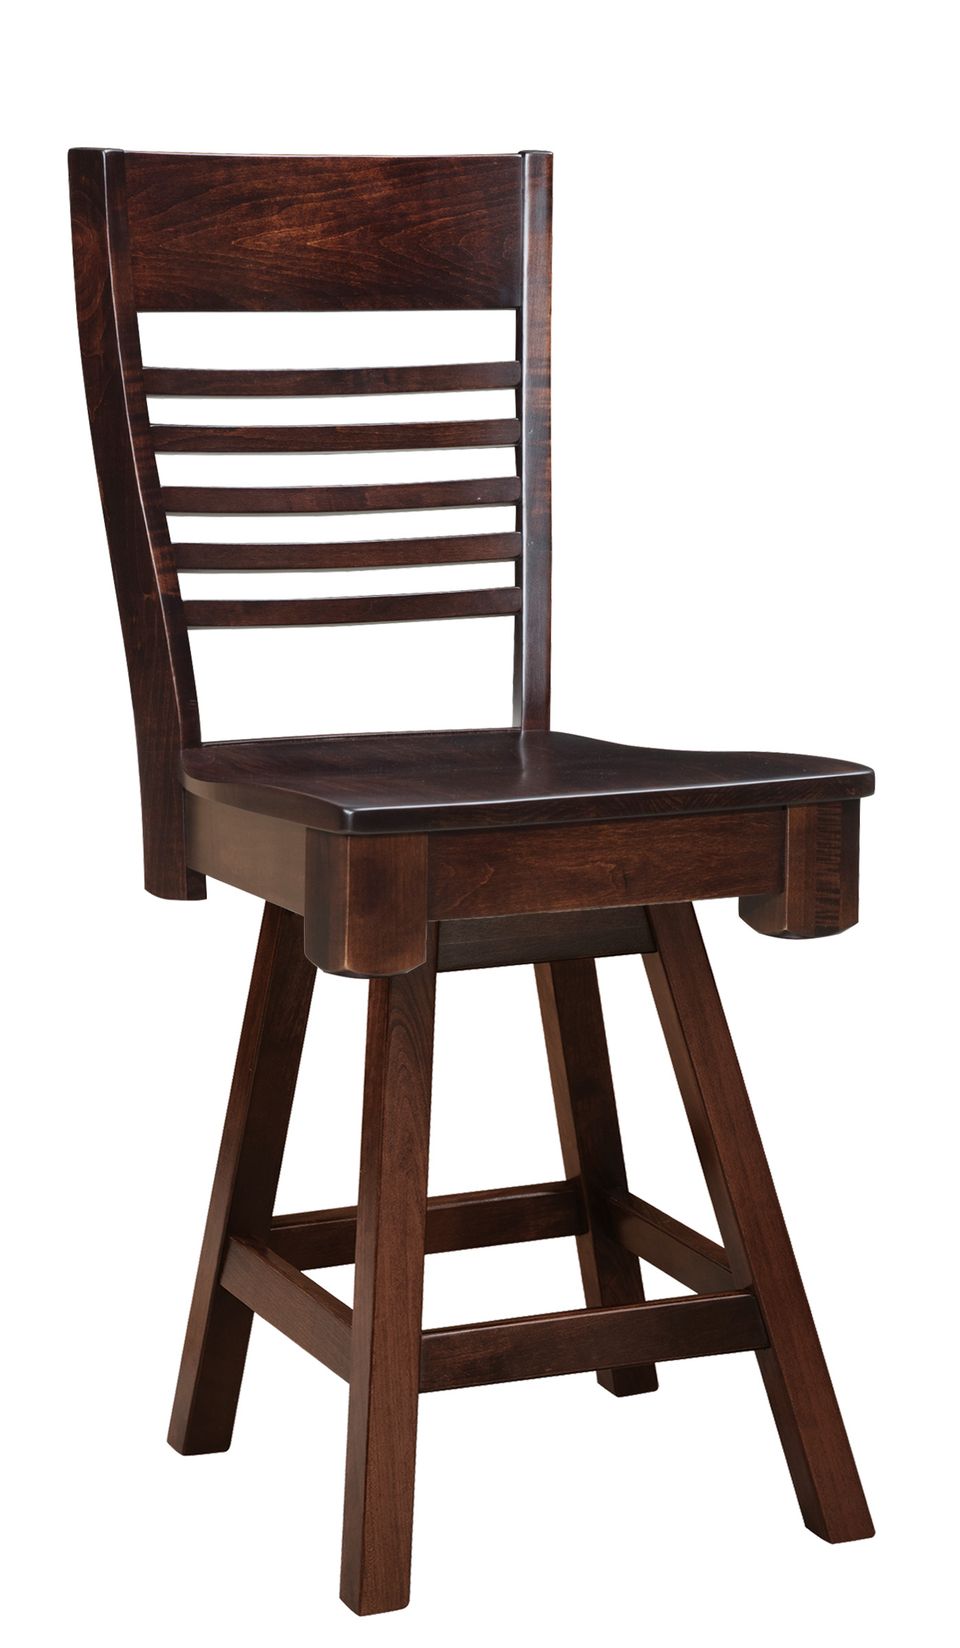 Faw shreveport swivel bar chair